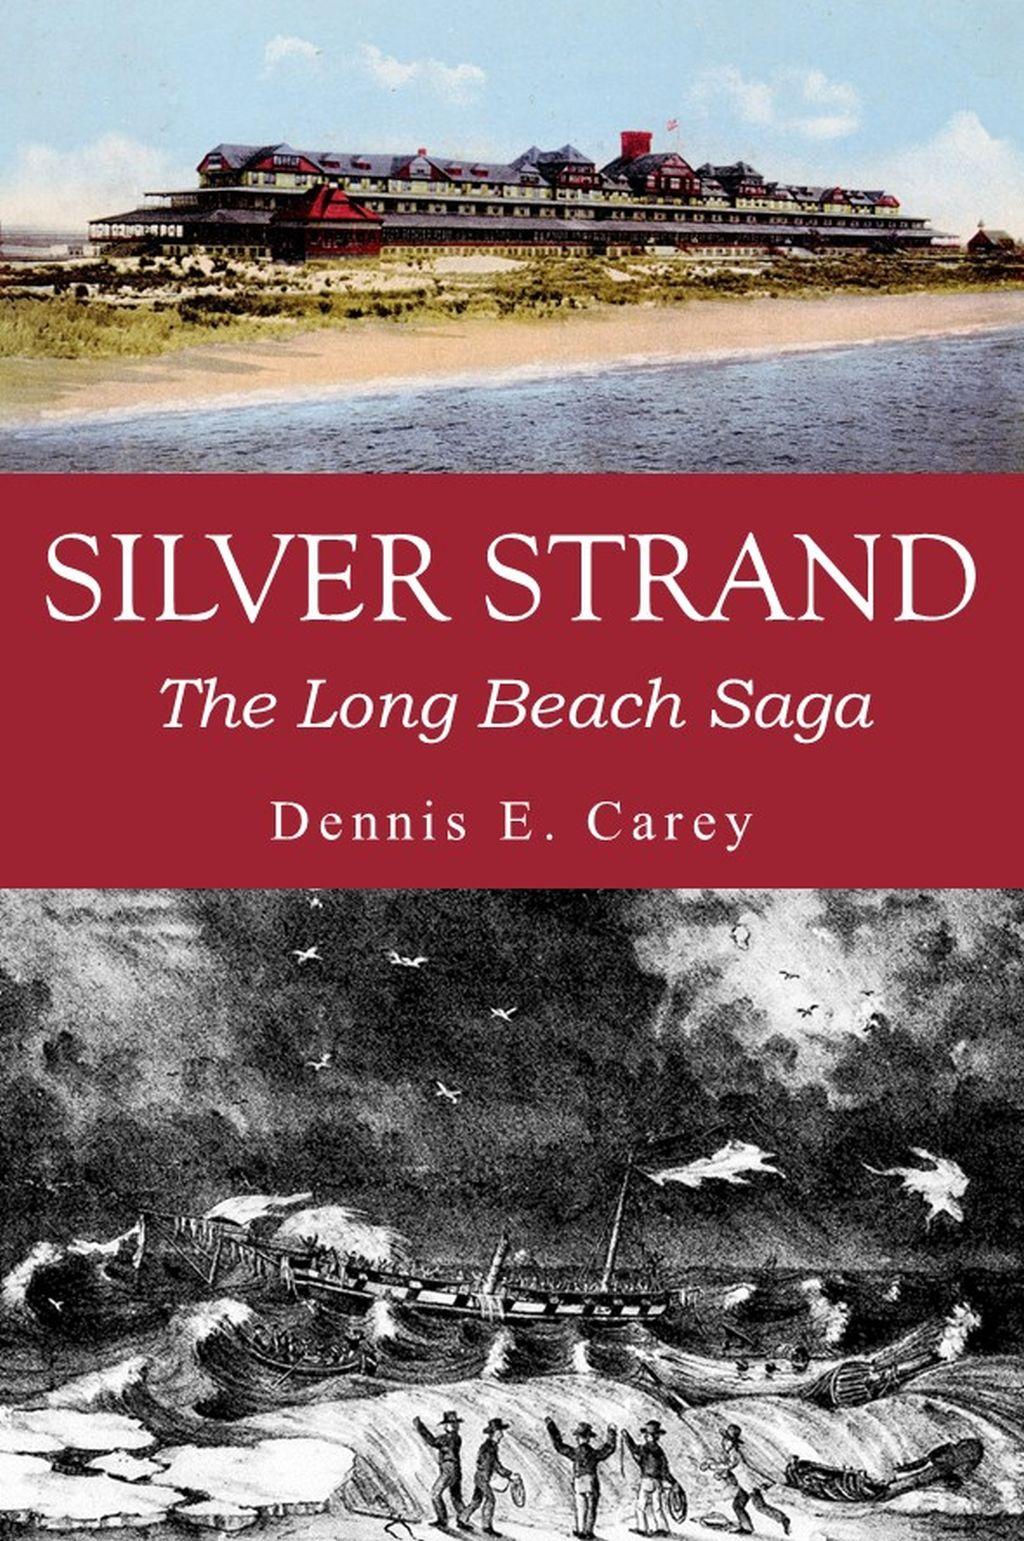 Silver Strand